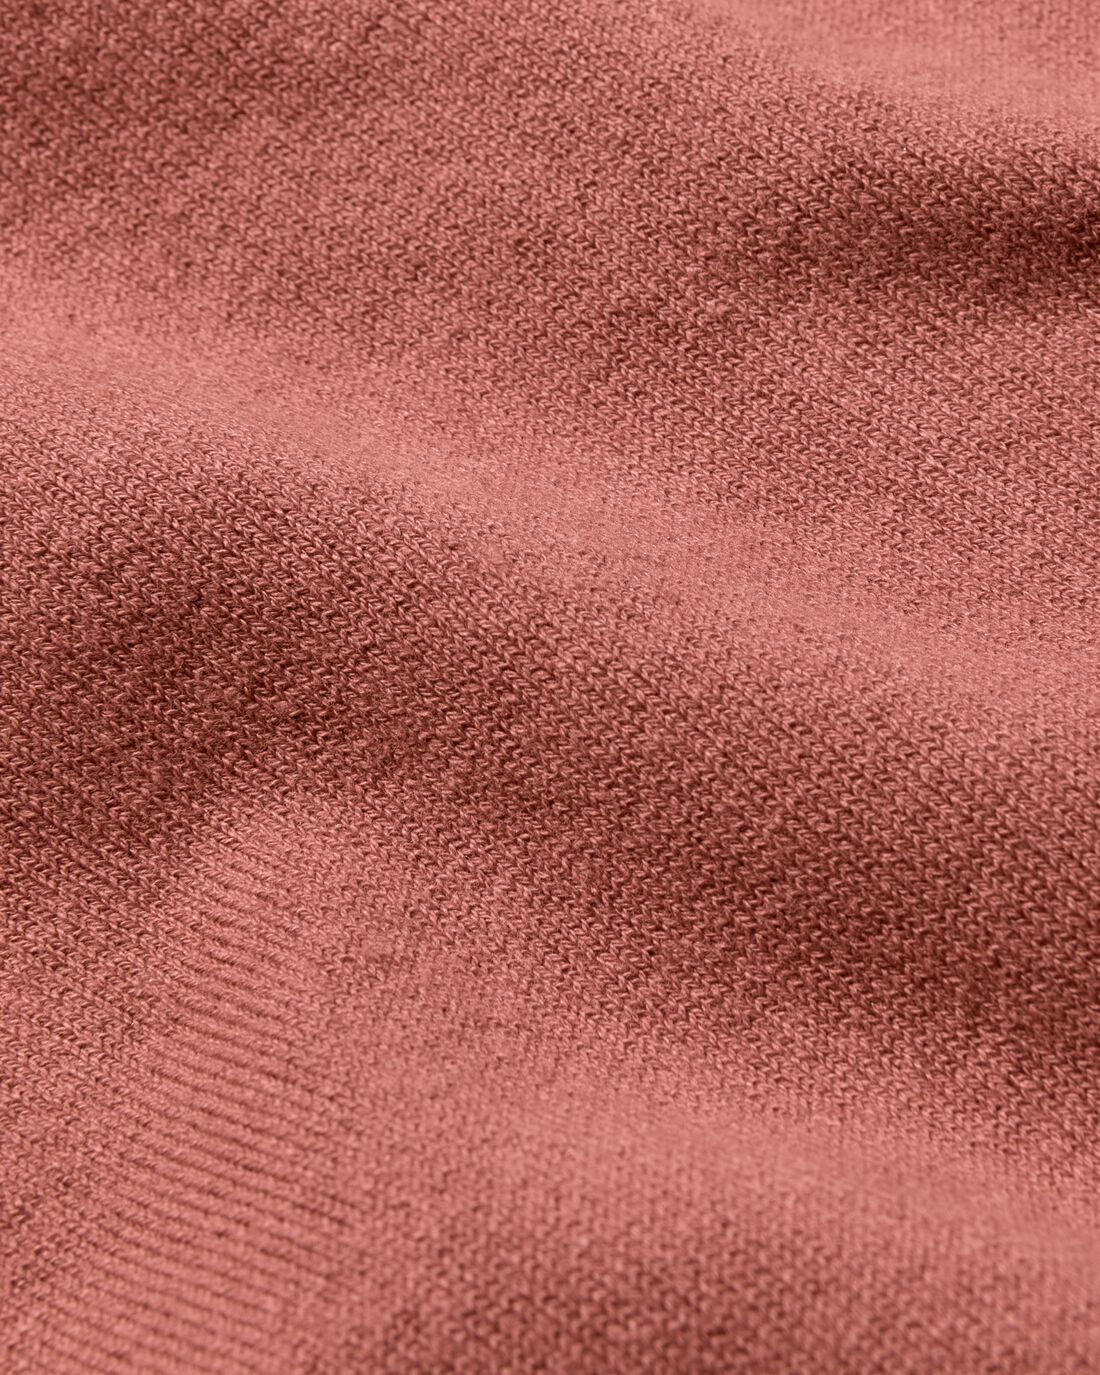 HEMA Kinder Vest Gebreid Roze (roze)